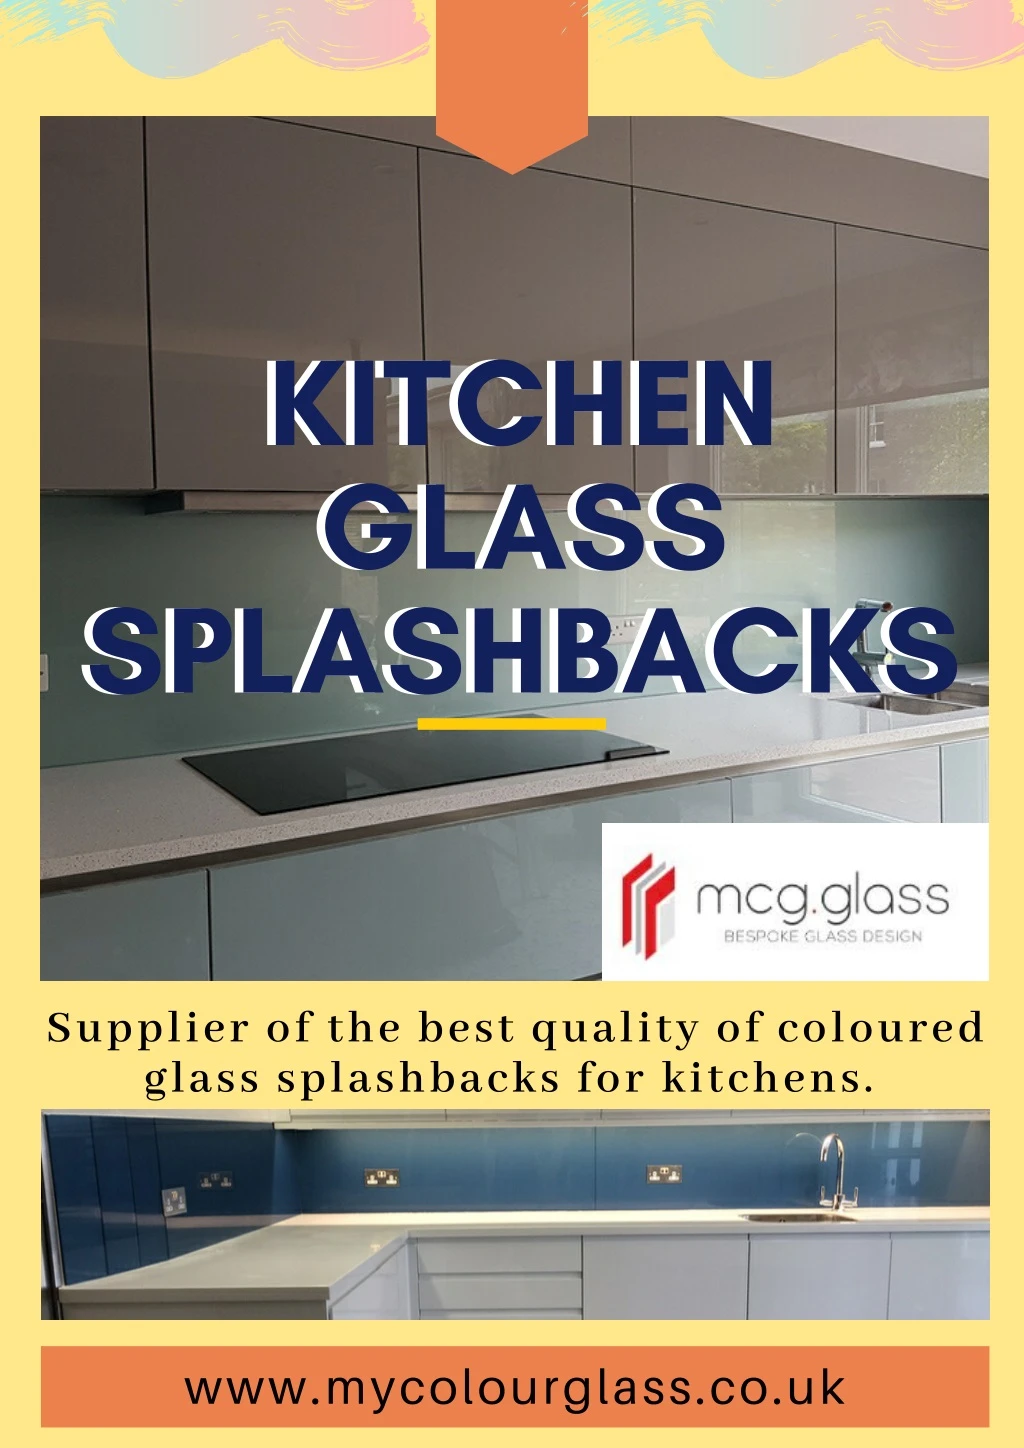 kitchen glass splashbacks splashbacks